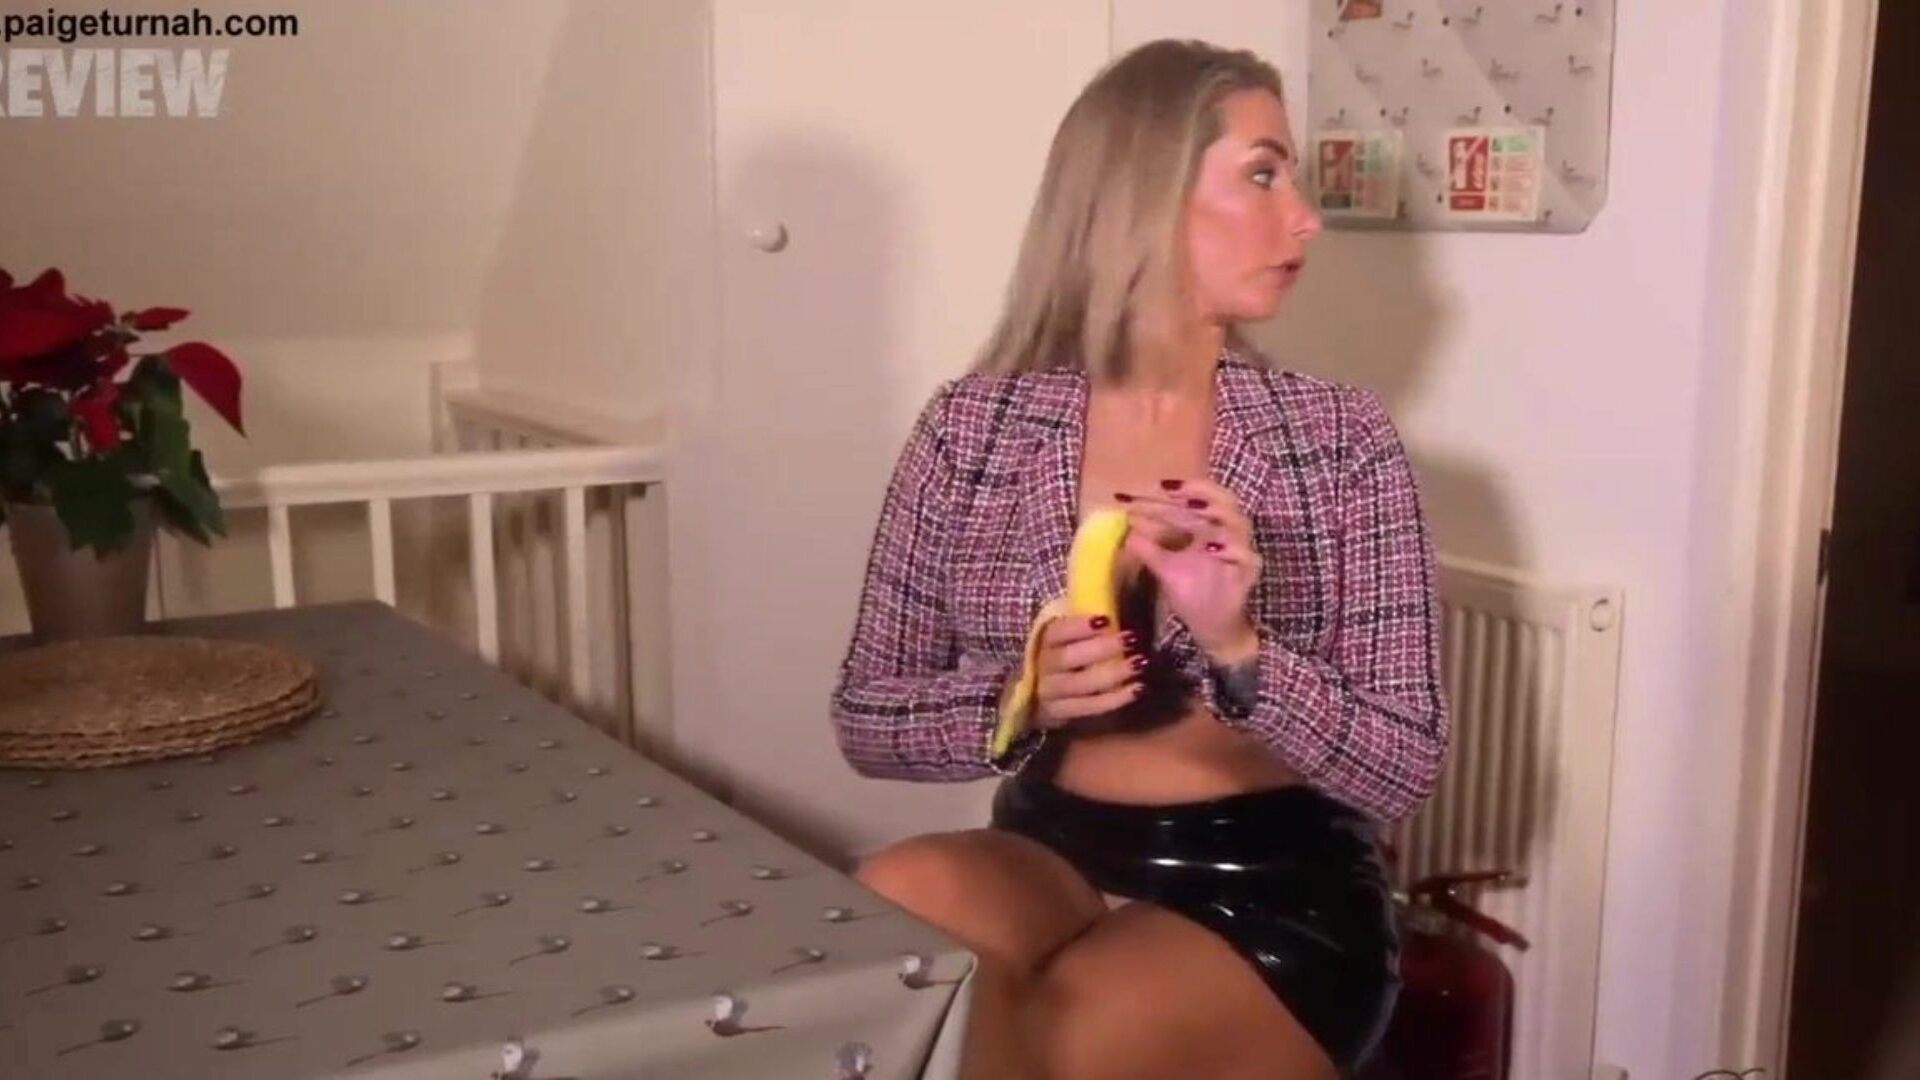 brittiläinen babe paige turnah on lounastauollaan ja kiusaa u: ta banaanin suullisen palvelun ja hämmentyneiden halkeamien kanssa